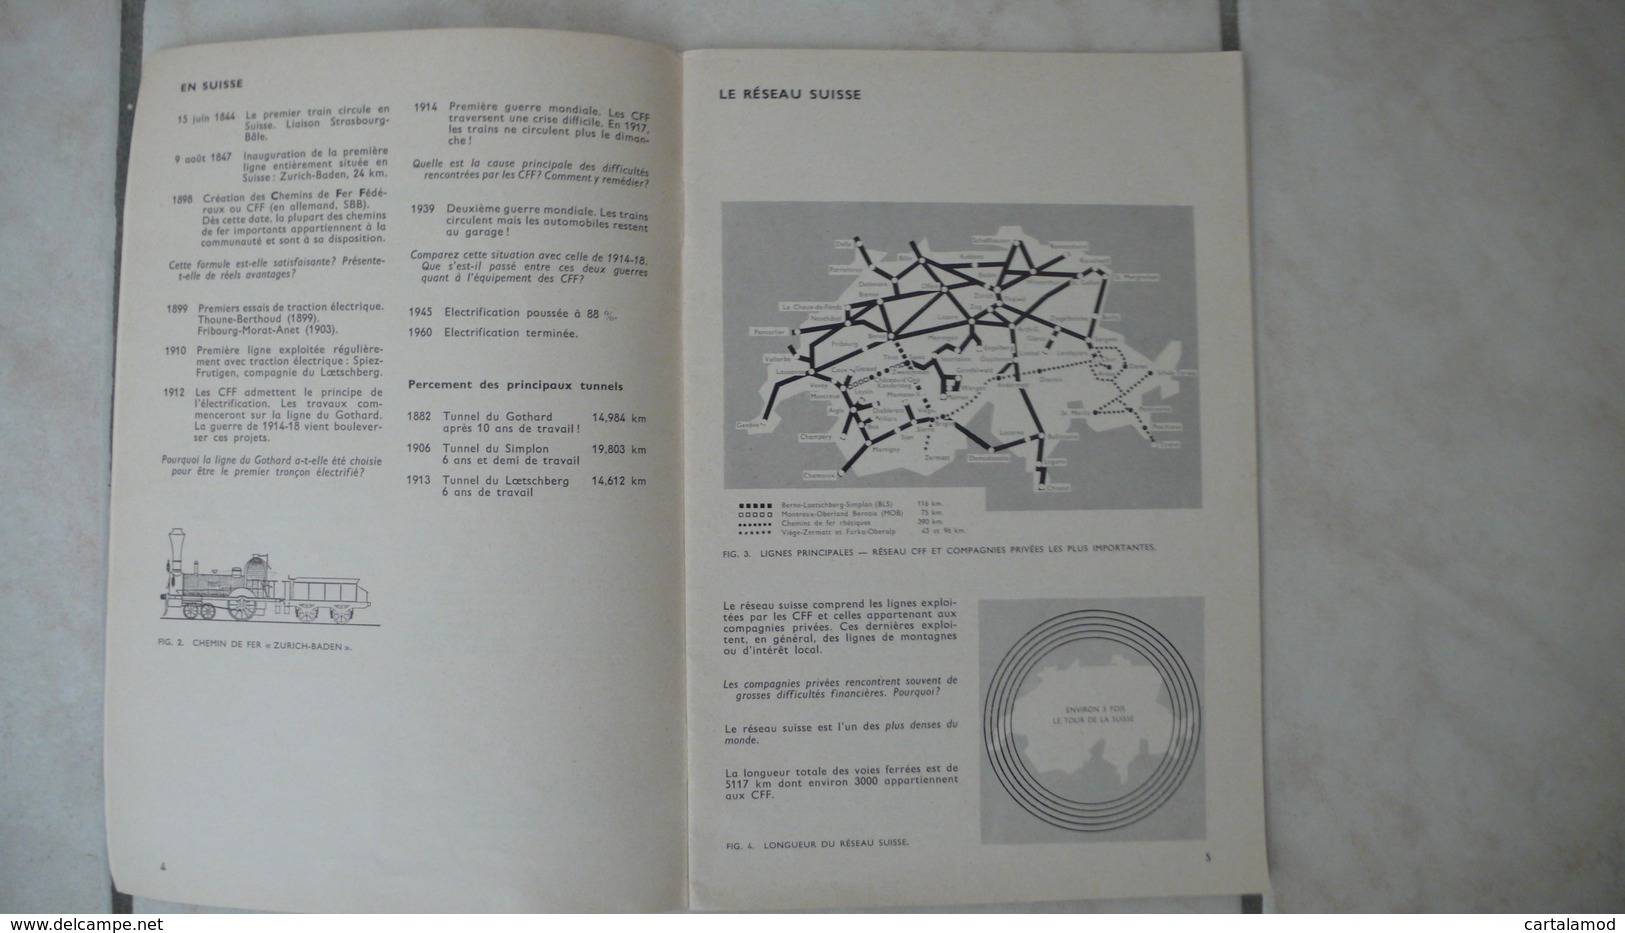 Le Rail La Route - Cahiers D'enseignement Pratique 65 - Suisse 1968 Ed. Delachaux & Niestlé Neuchatel - Fiches Didactiques